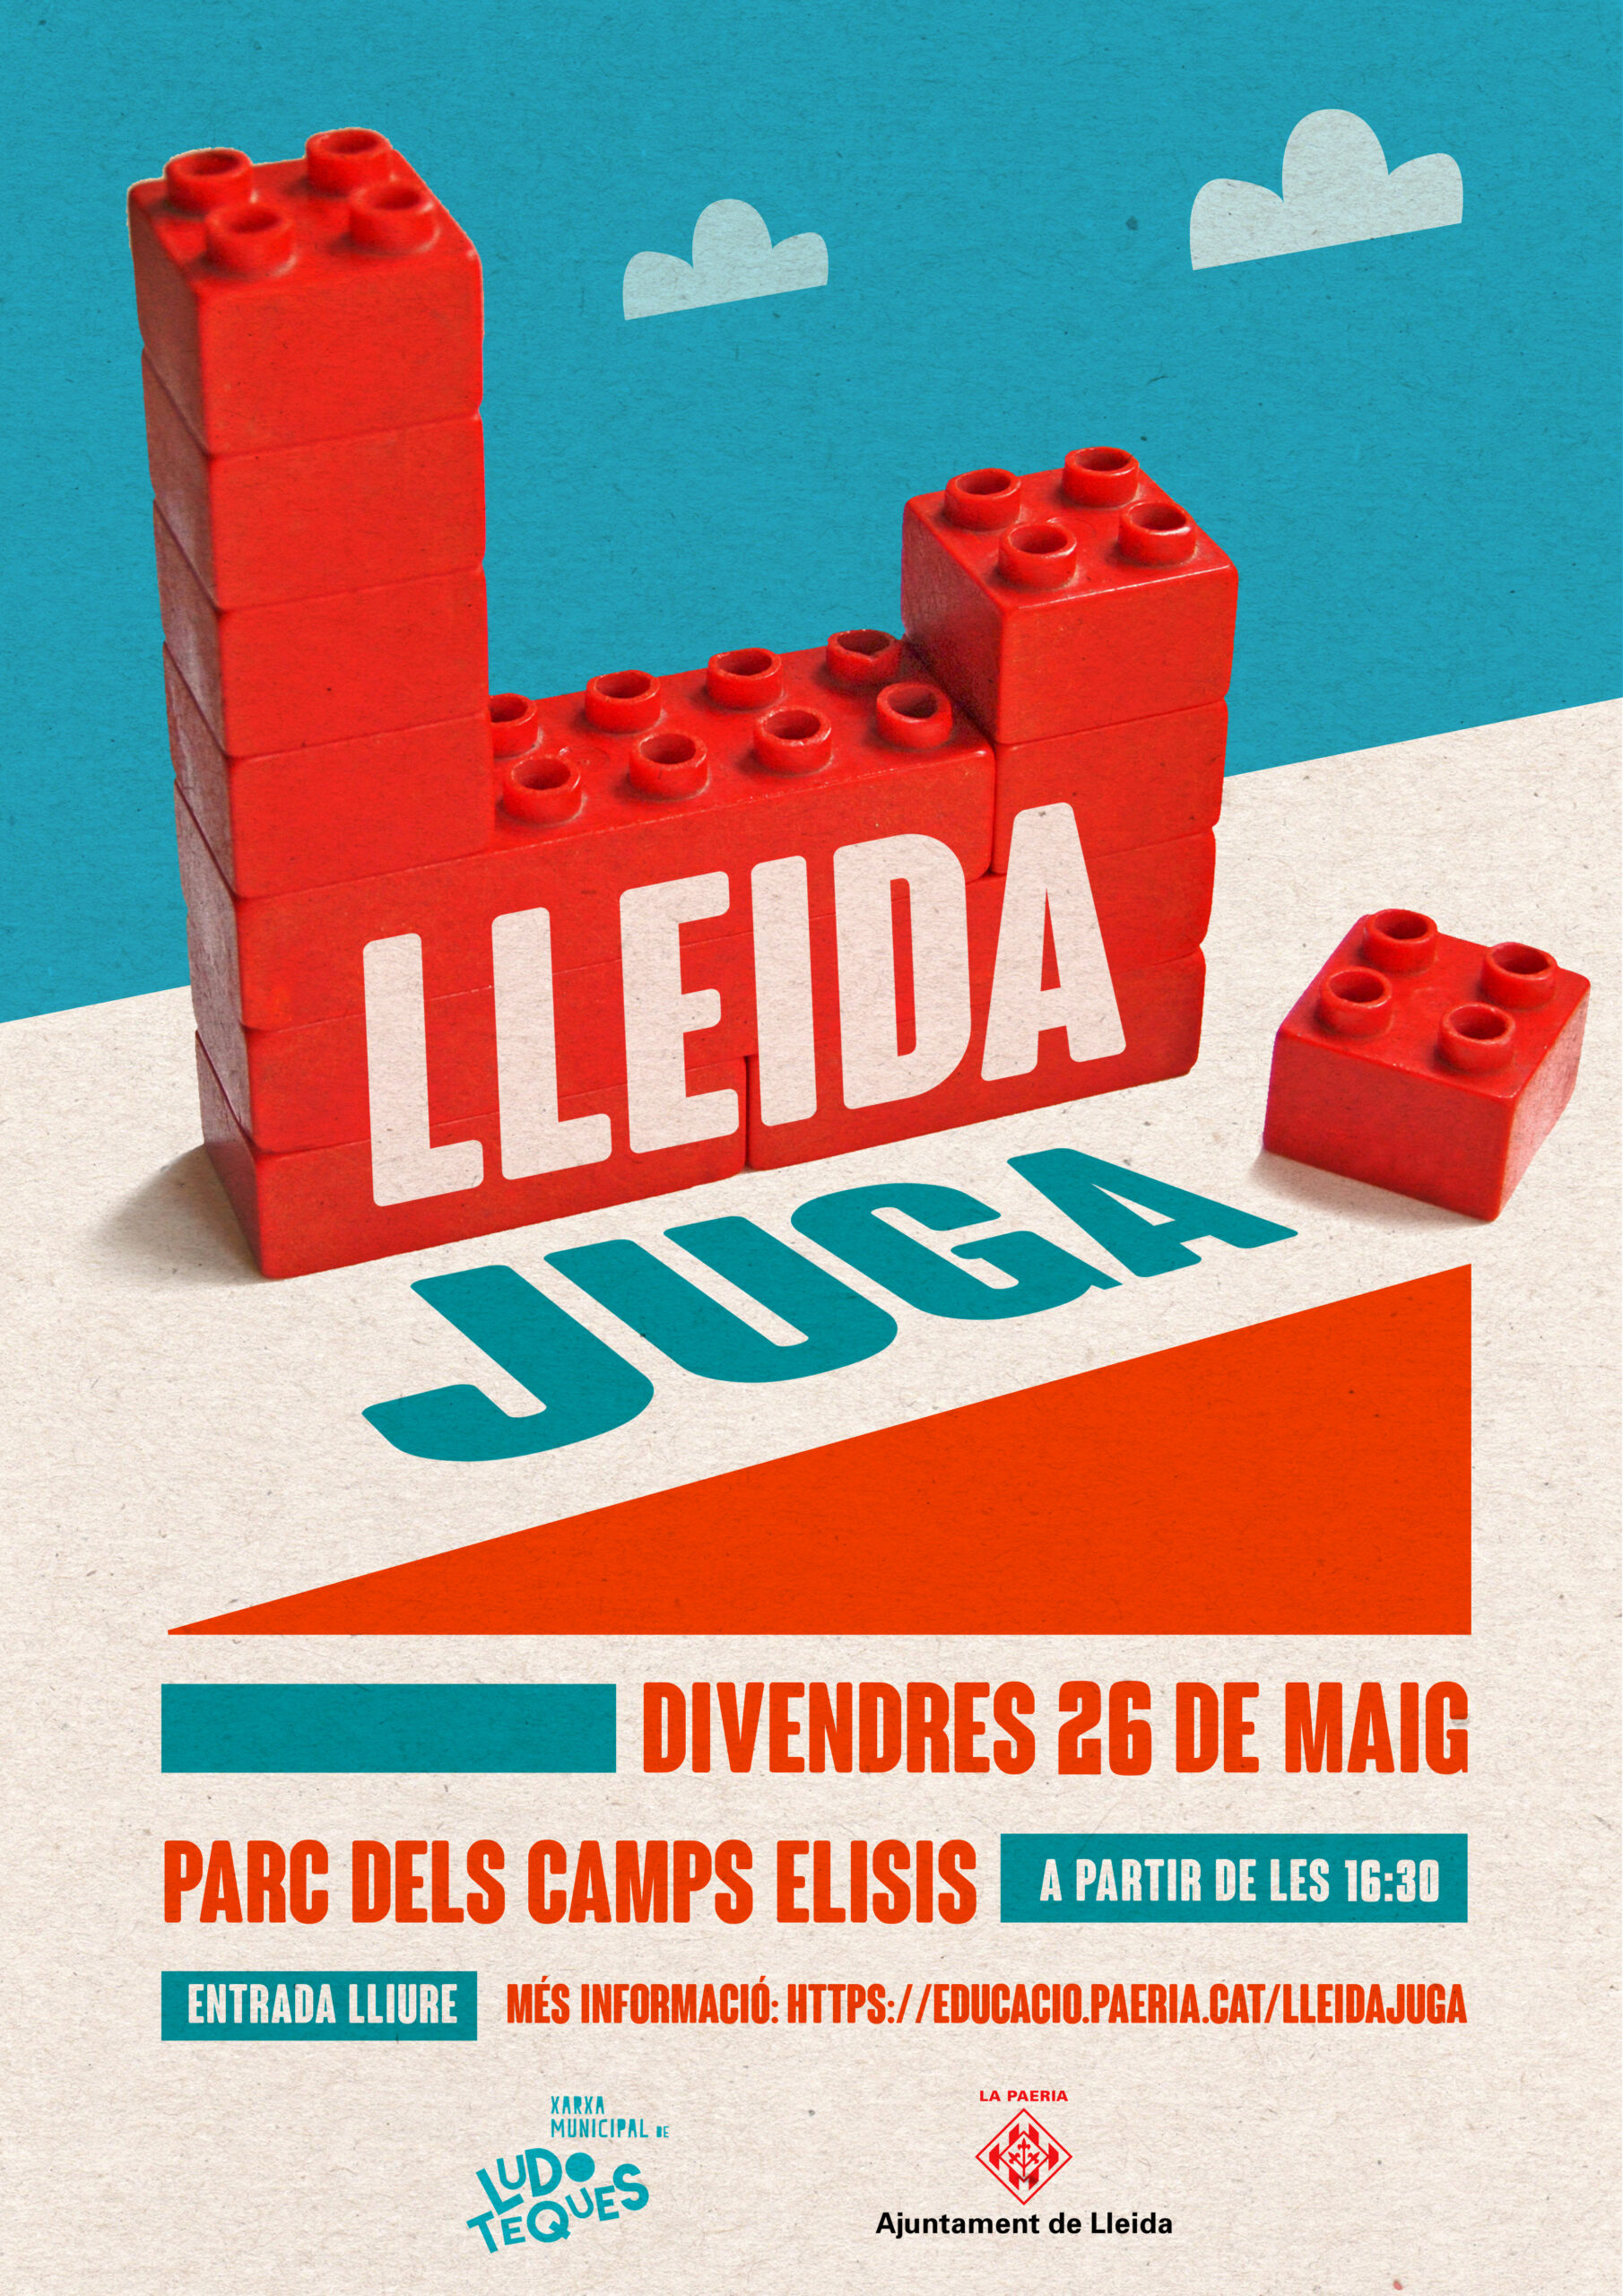 Featured image for “El ADEJO estará presente en Lleida Juga el 26 de mayo en los Camps Elisis”